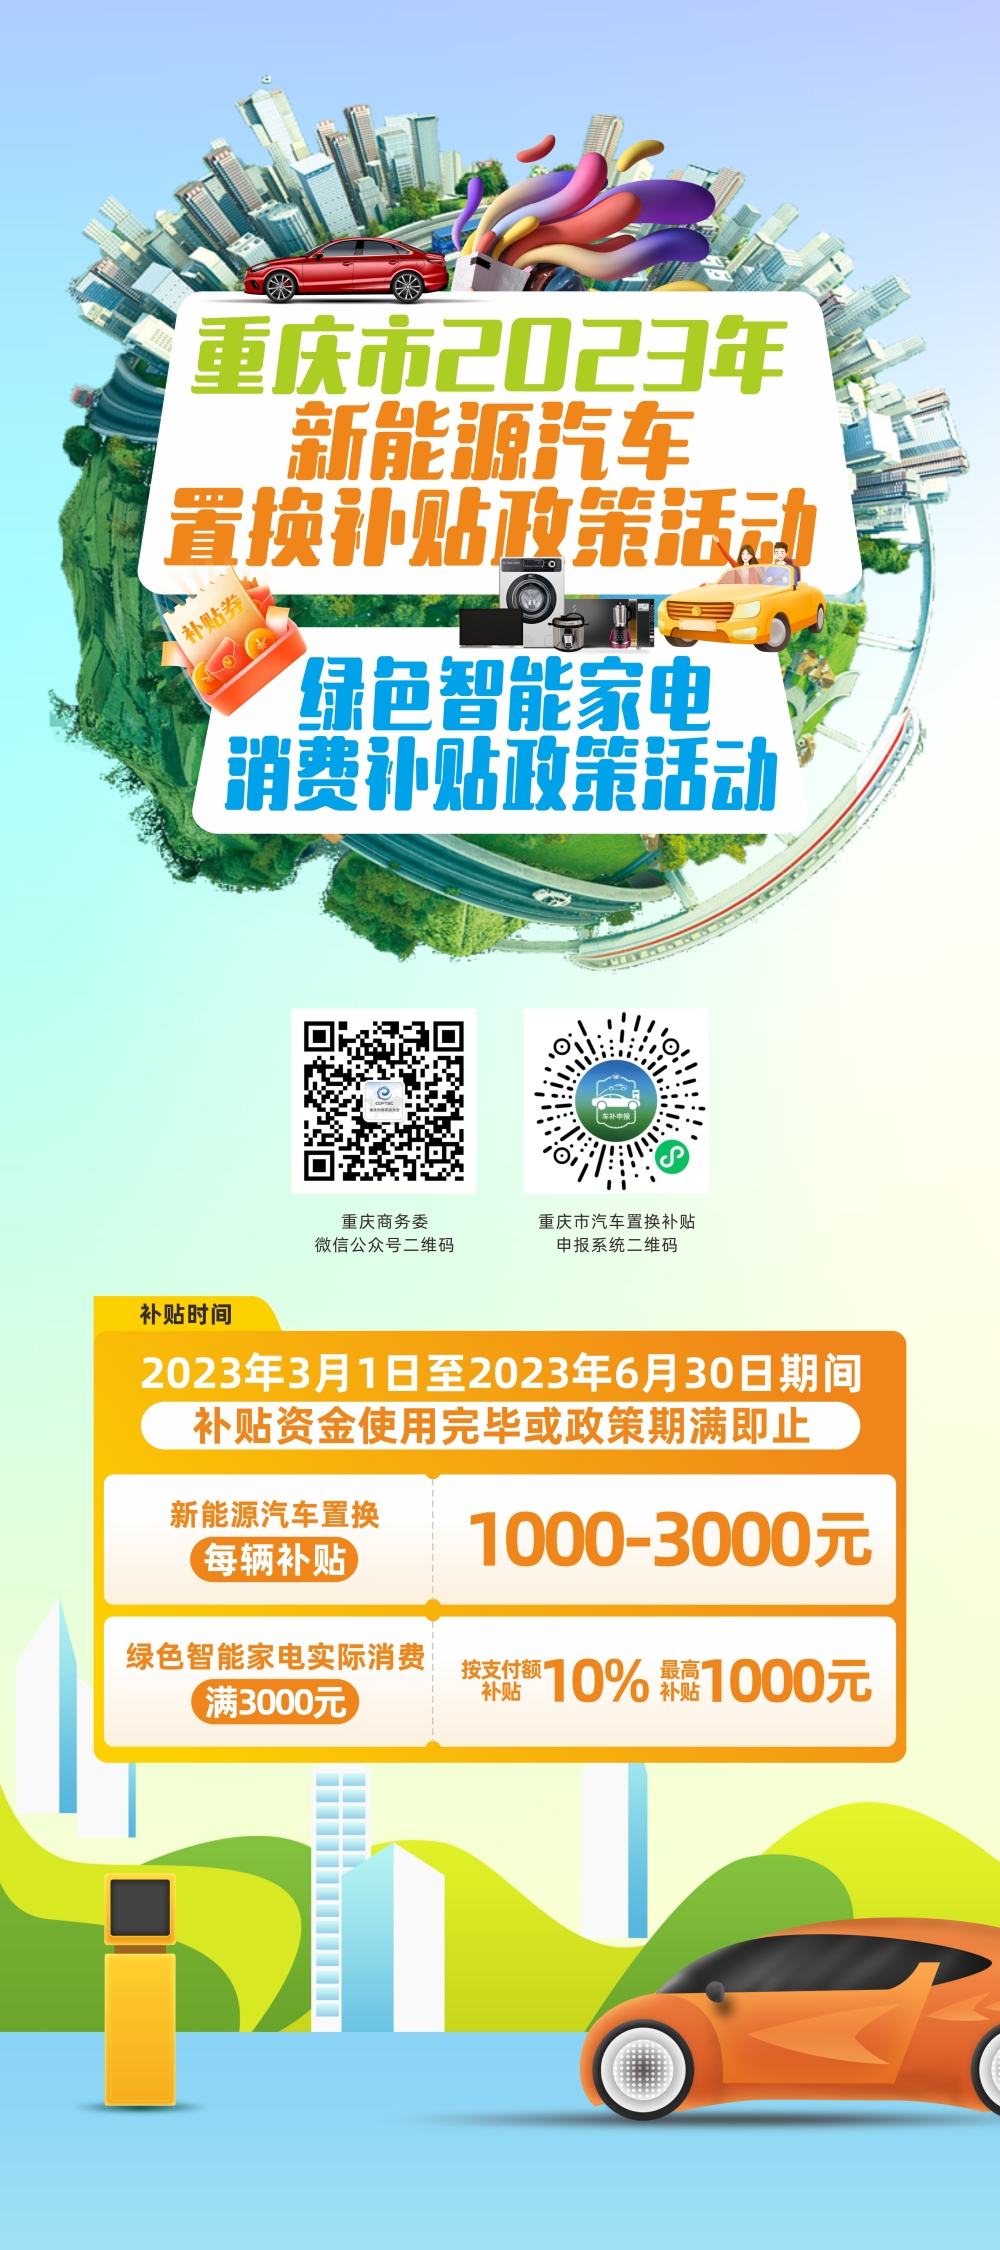 重庆实施2023年绿色智能家电消费补贴 购买新能源汽车最高享受3000元财政补贴插图